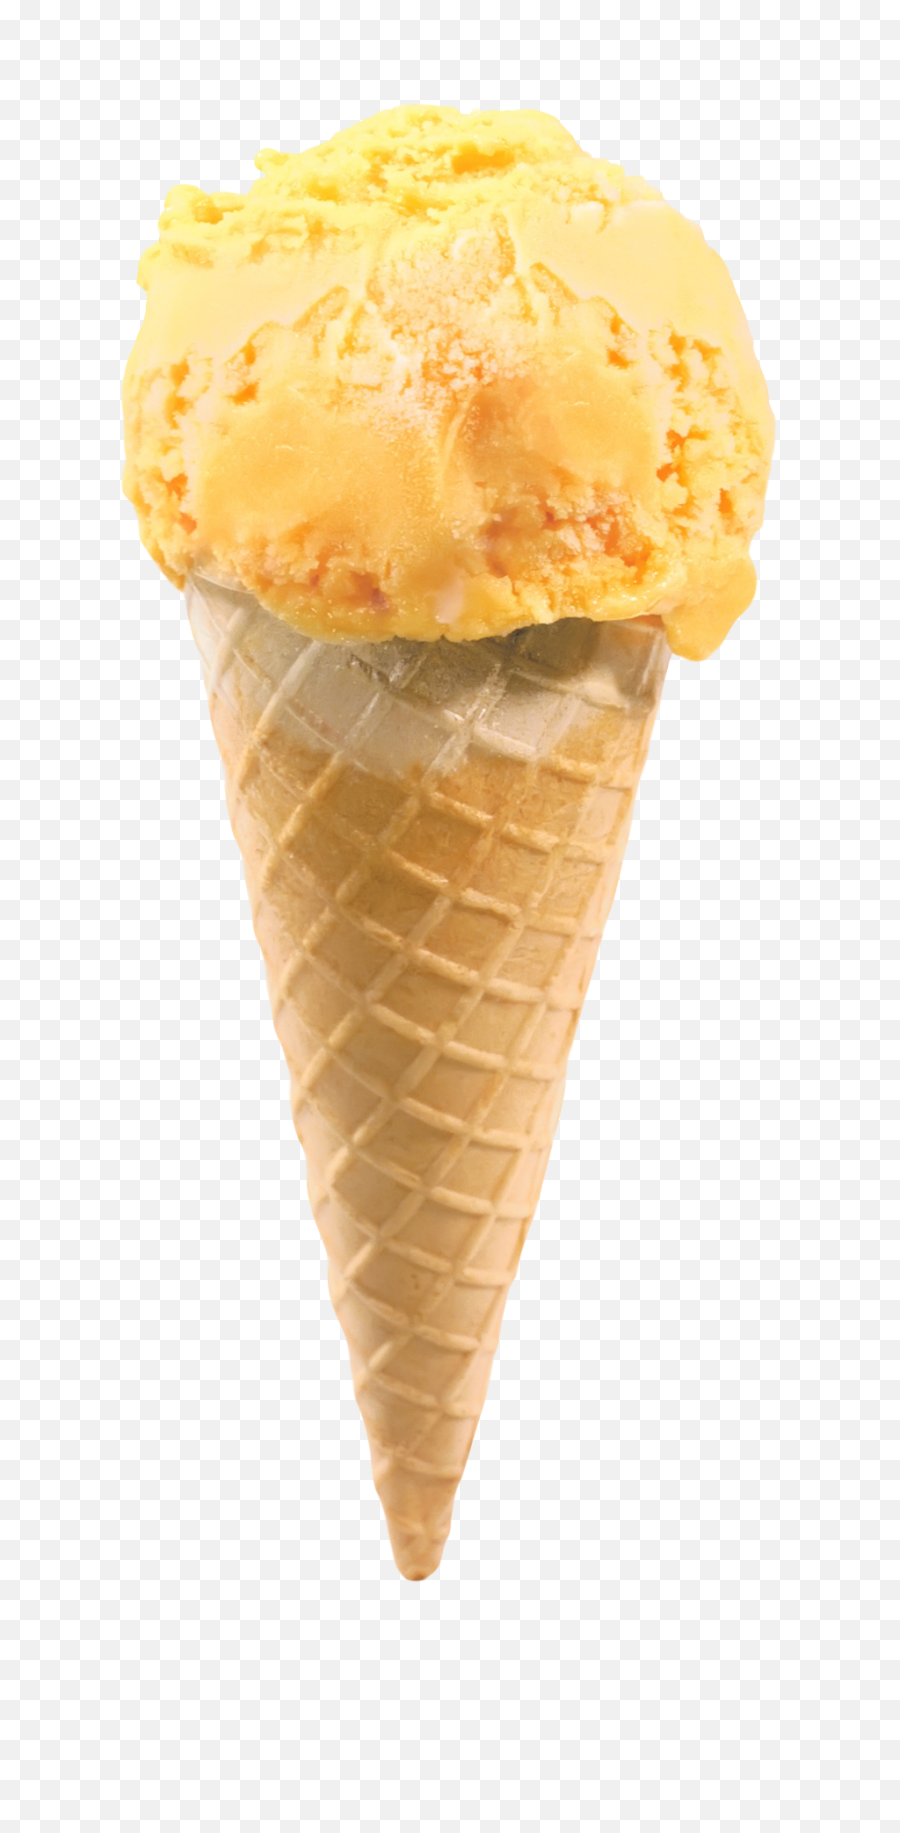 Ice Cream With Cone Png Image - Ice Cream Cone Png,Ice Cream Transparent